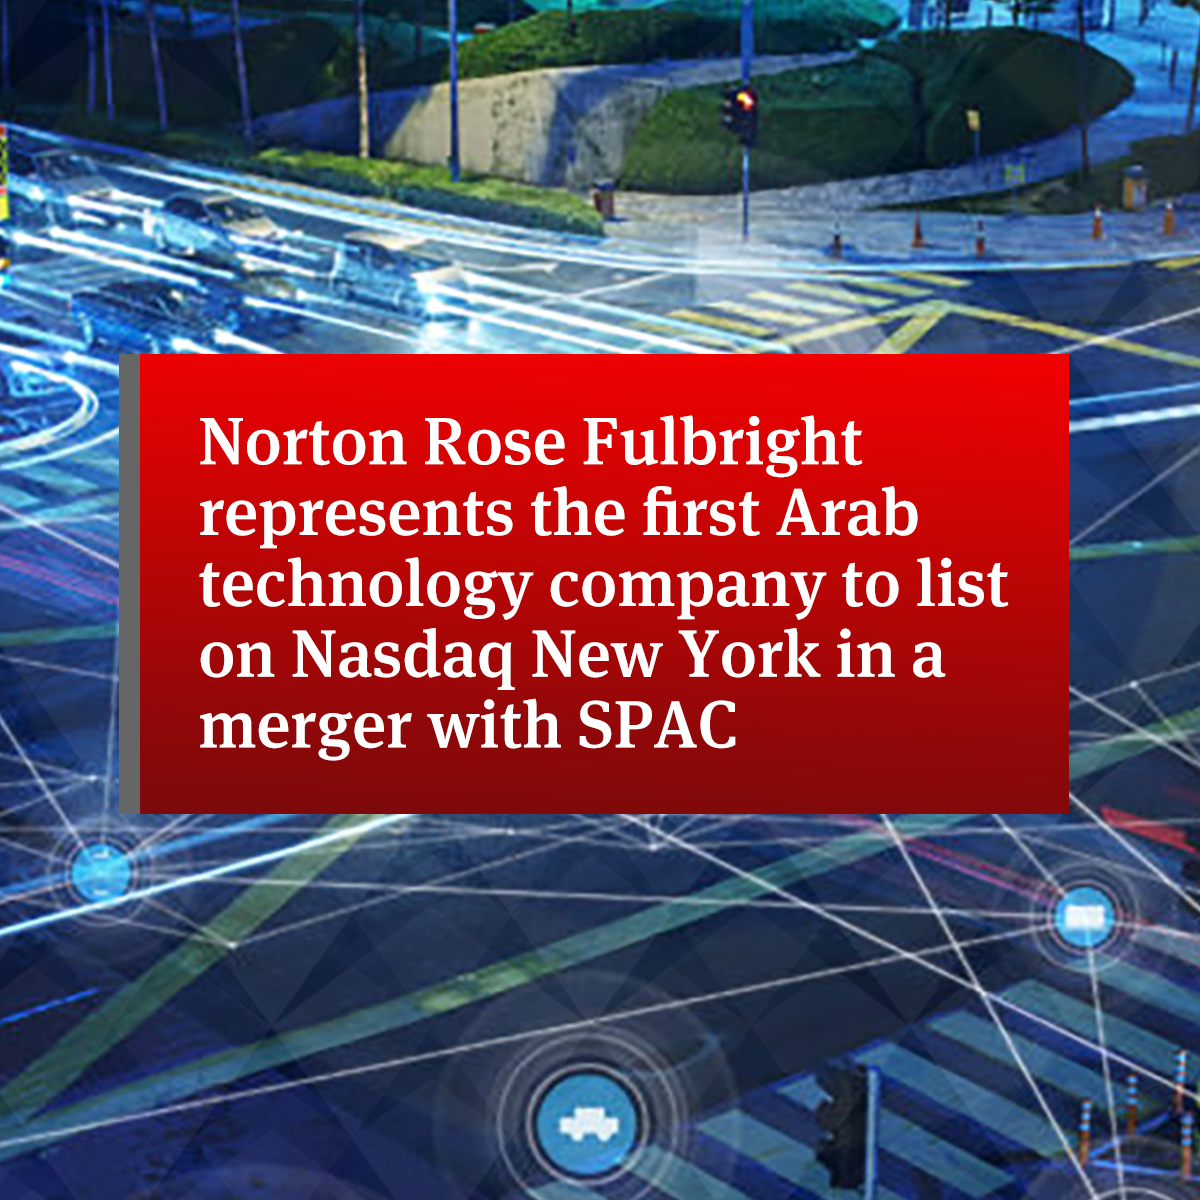 نورتون روز فولبرايت تمثل أول شركة تكنولوجيا عربية يتم إدراجها في بورصة ناسداك في نيويورك بالاندماج مع SPAC |  المملكة المتحدة |  شركة محاماة عالمية